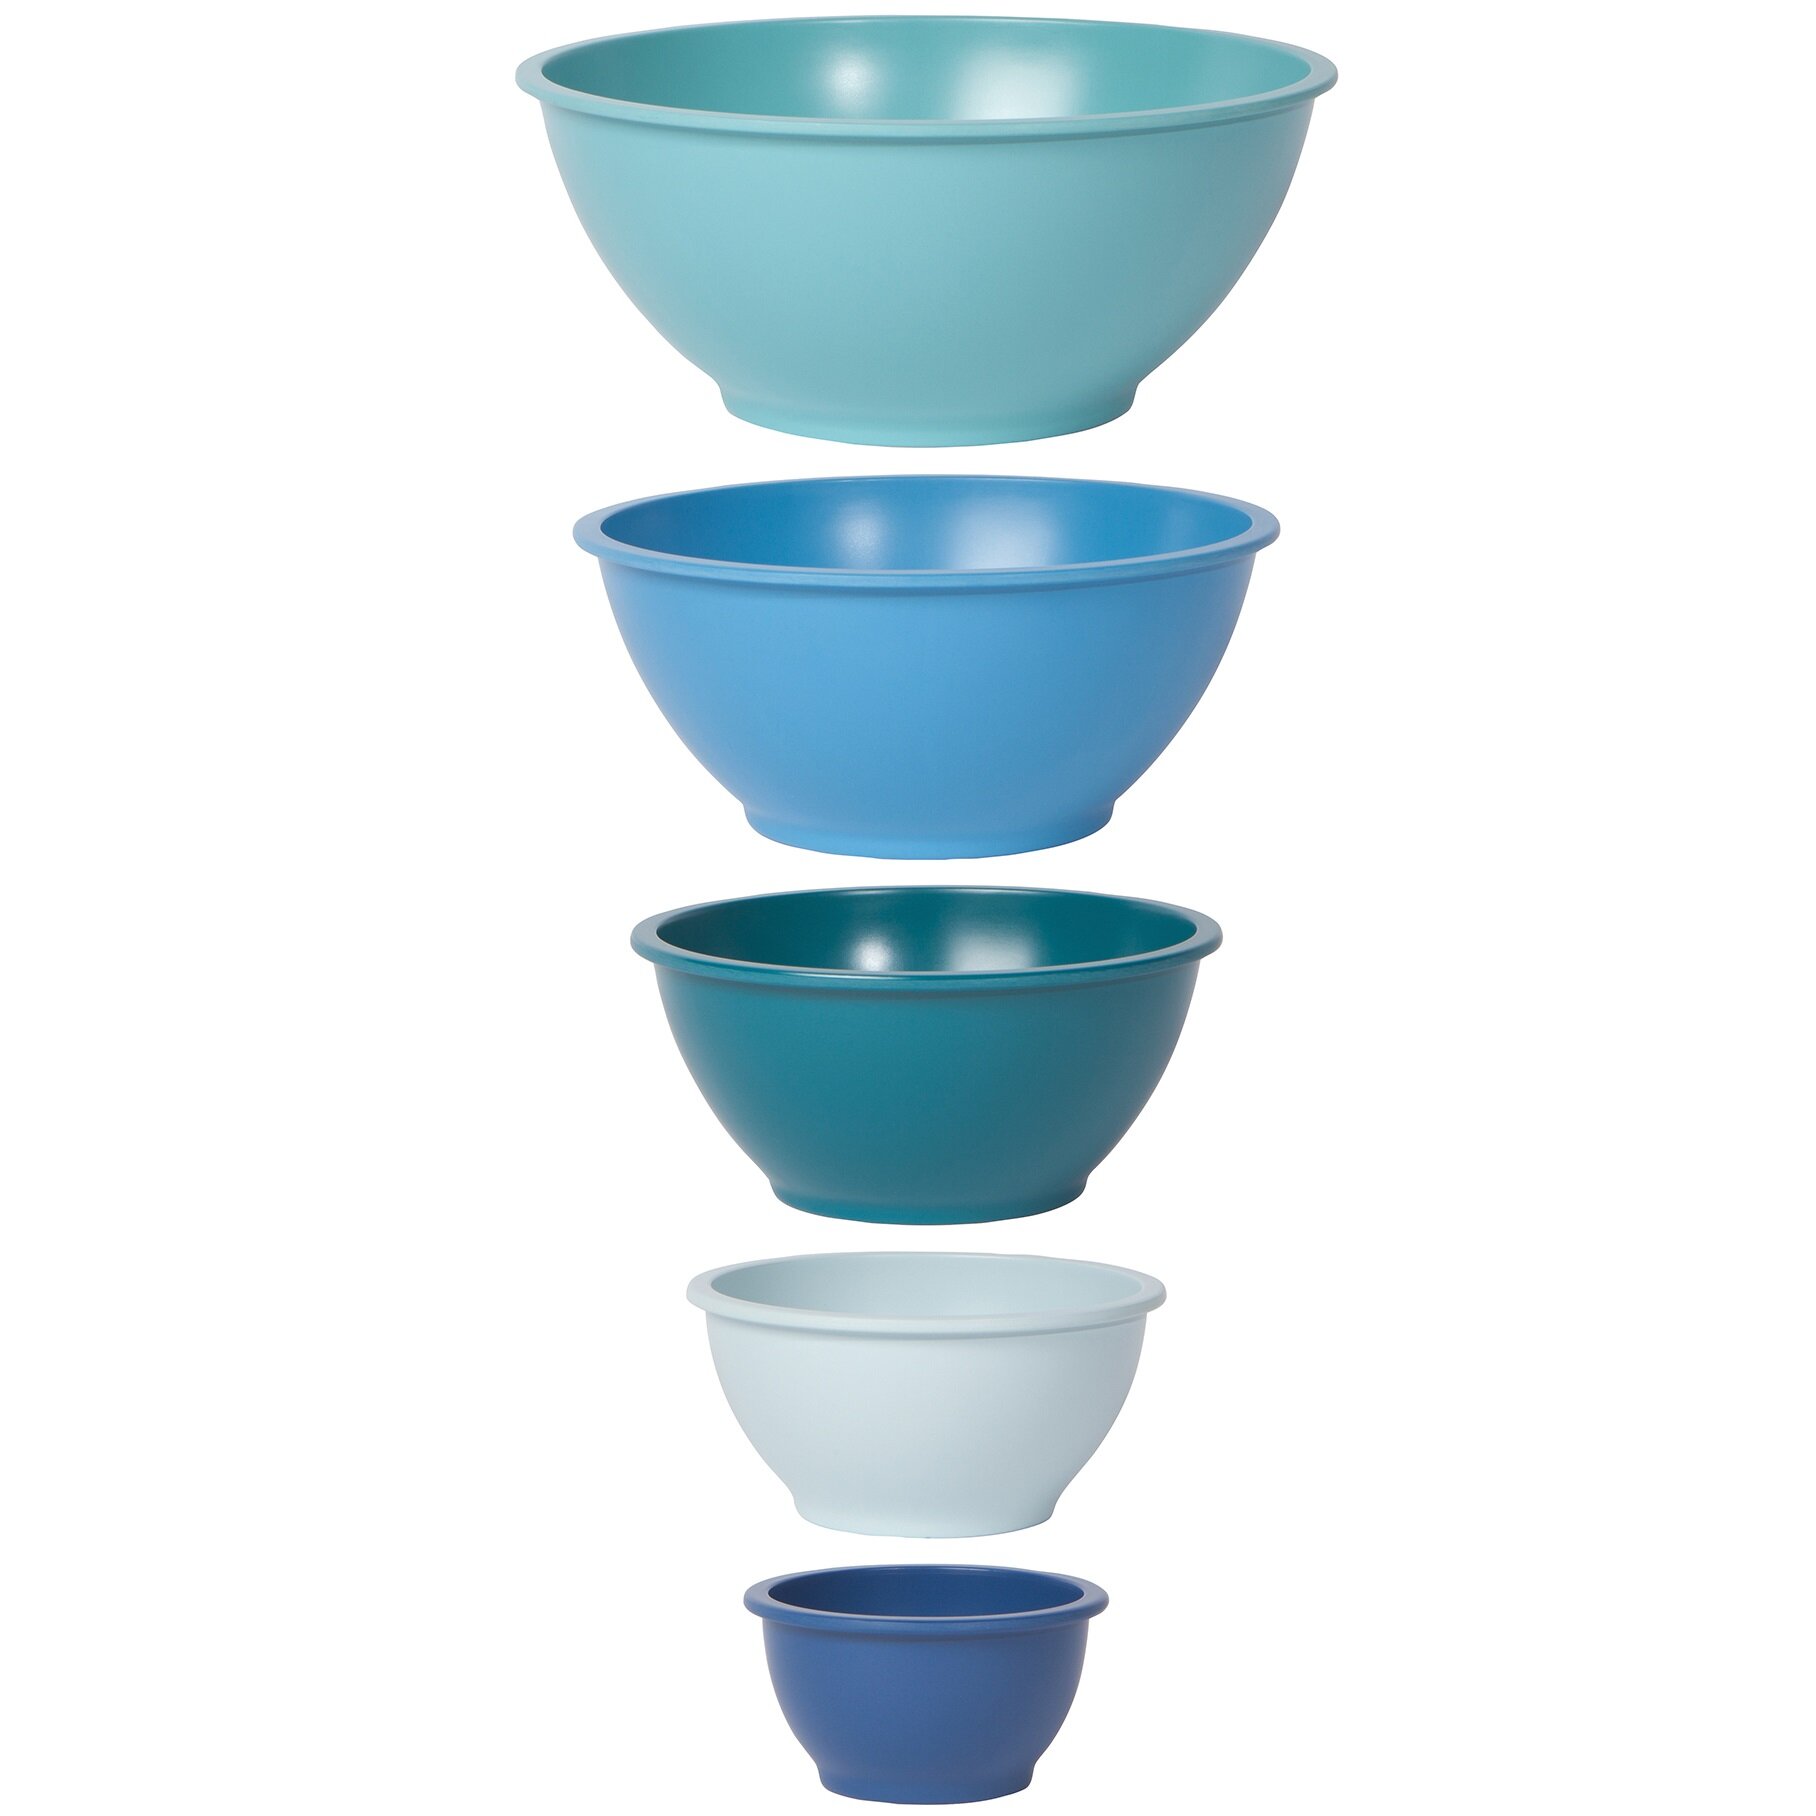  Oggi Set of 6 Melamine Mixing Bowls - Ideal for Food